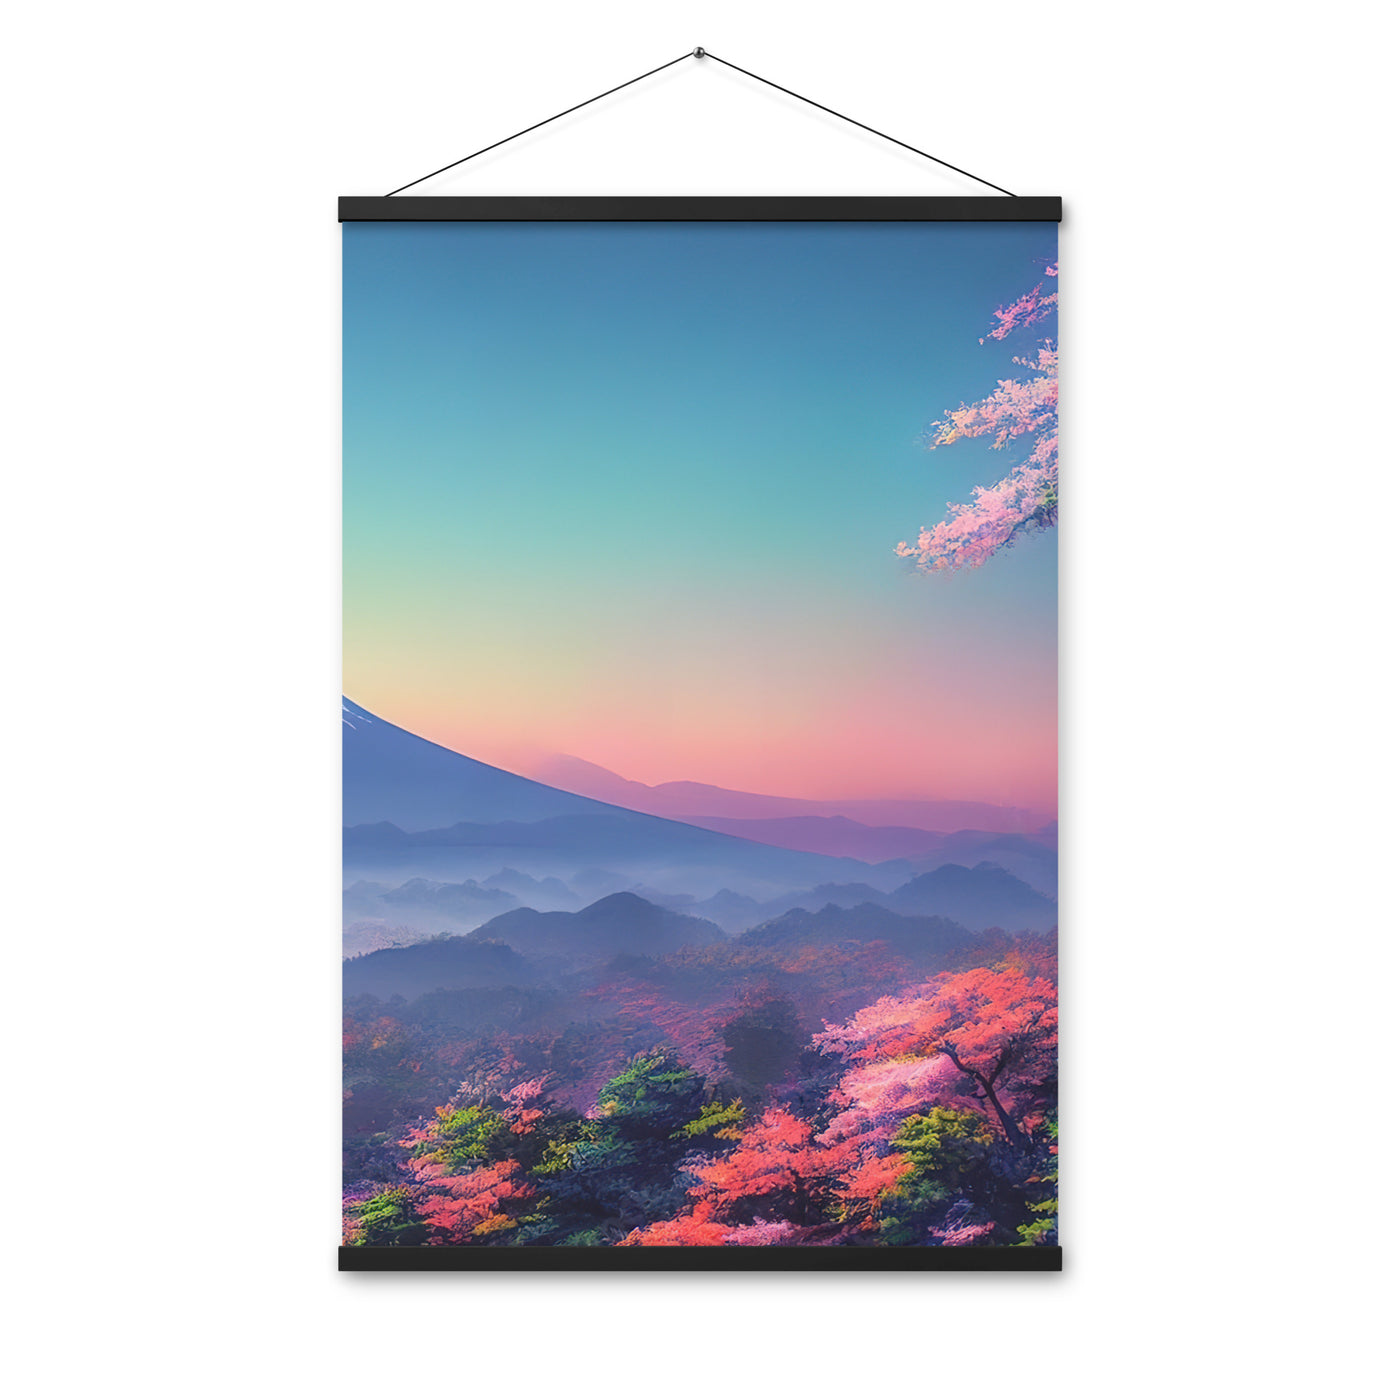 Berg und Wald mit pinken Bäumen - Landschaftsmalerei - Premium Poster mit Aufhängung berge xxx Black 61 x 91.4 cm